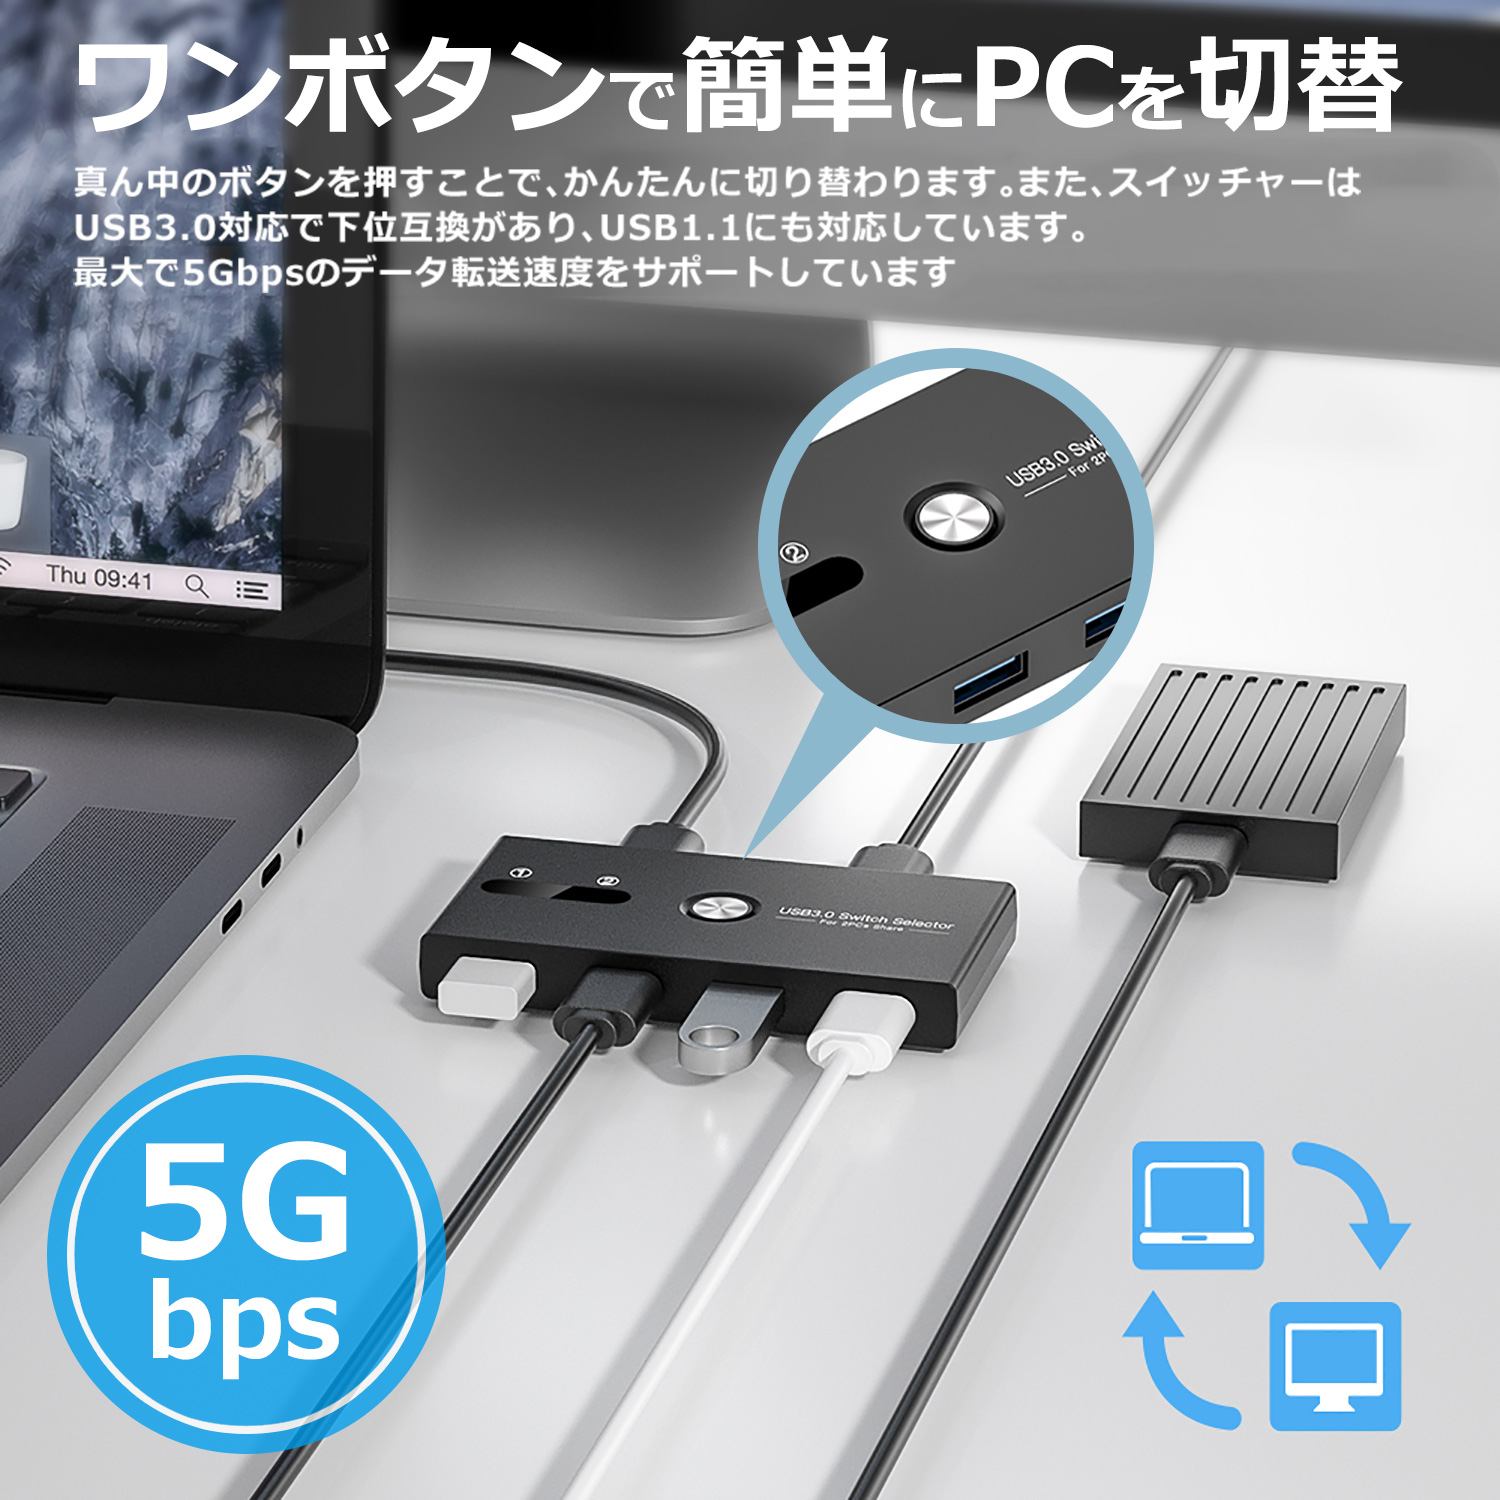  сегодня максимальный 600 иен скидка переключатель USB3.0 высокая скорость пересылка принтер mau ski board ступица ручной переключатель USB кабель 2 1.5m ua0001 бесплатная доставка 